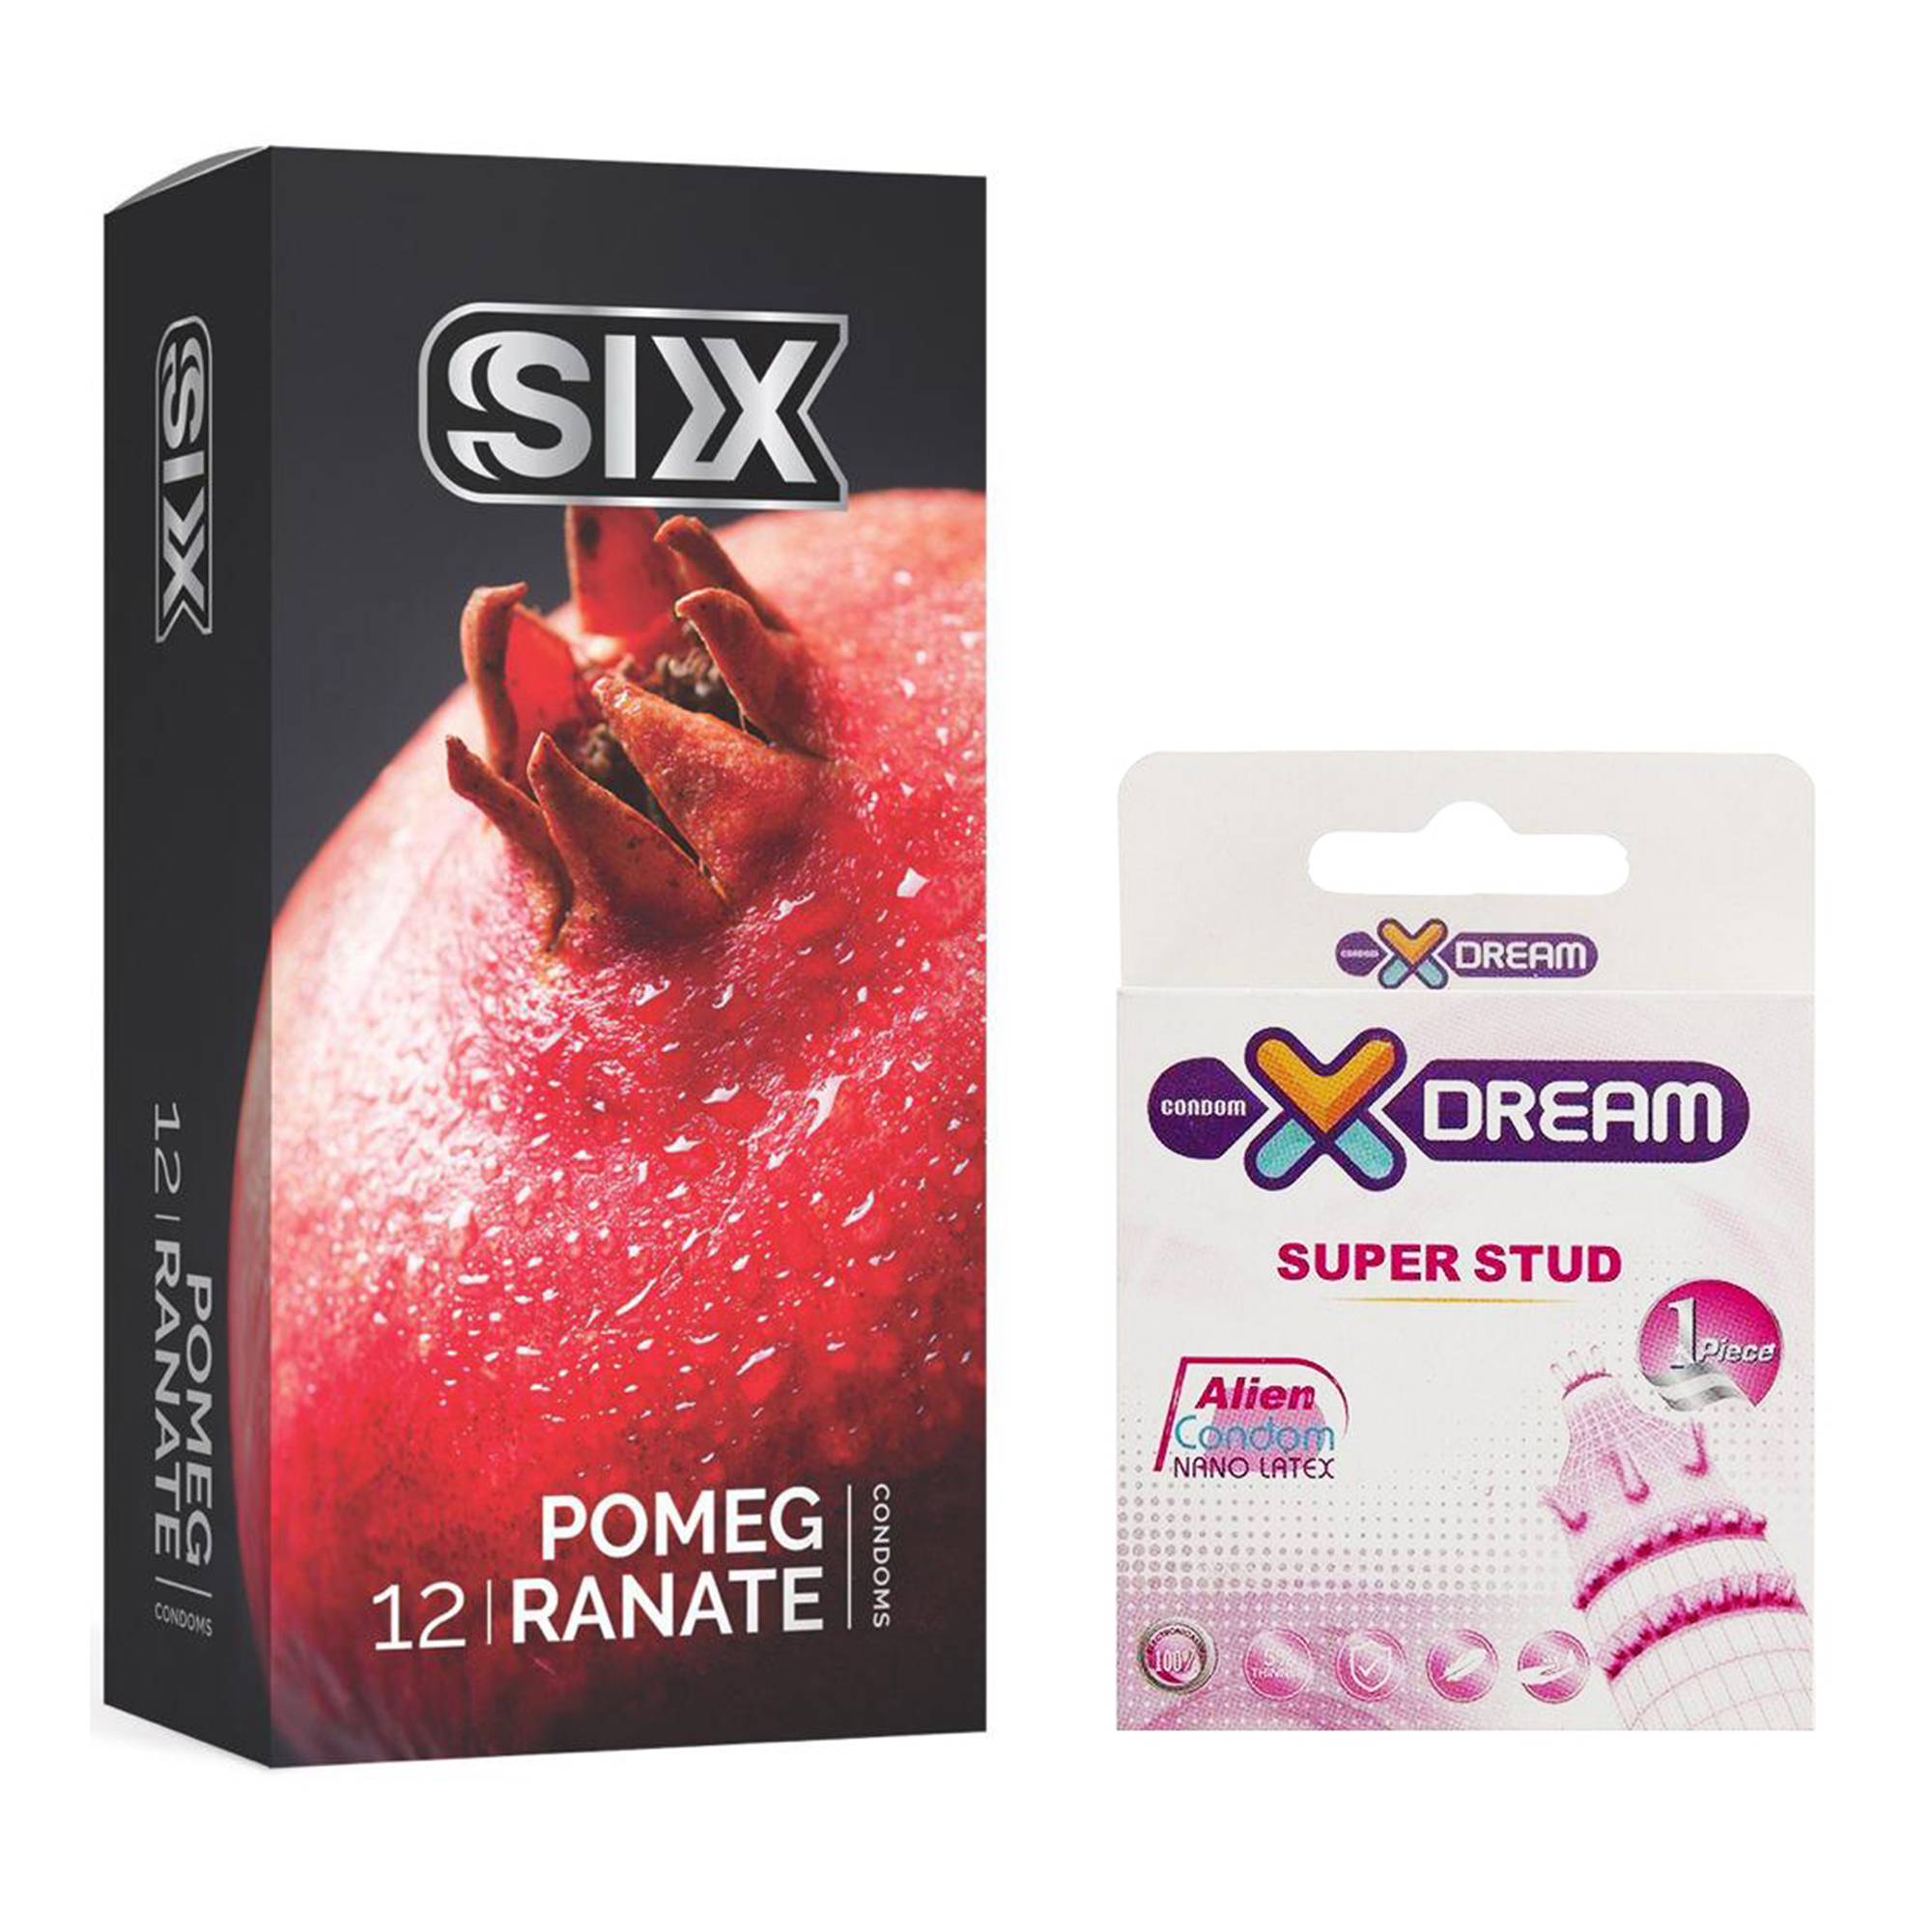 کاندوم سیکس مدل Pomegranate بسته ۱۲ عددی به همراه کاندوم ایکس دریم مدل Super Stud